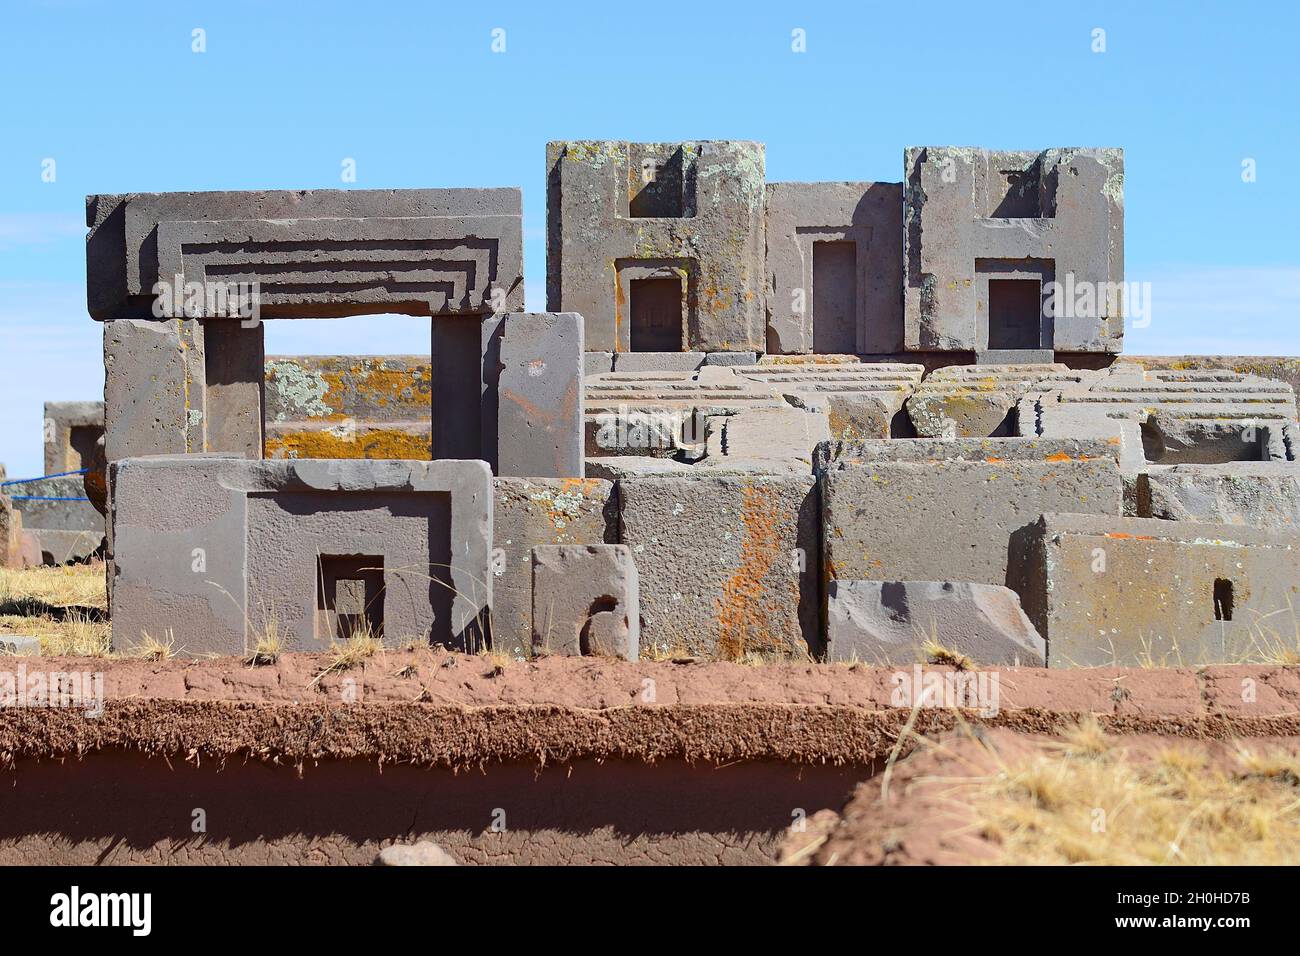 Ruines de Pumapunku, ruines pré-inca de Tiwanaku, également Tiahuanaco,  site du patrimoine mondial de l'UNESCO, département de la Paz, Bolivie  Photo Stock - Alamy